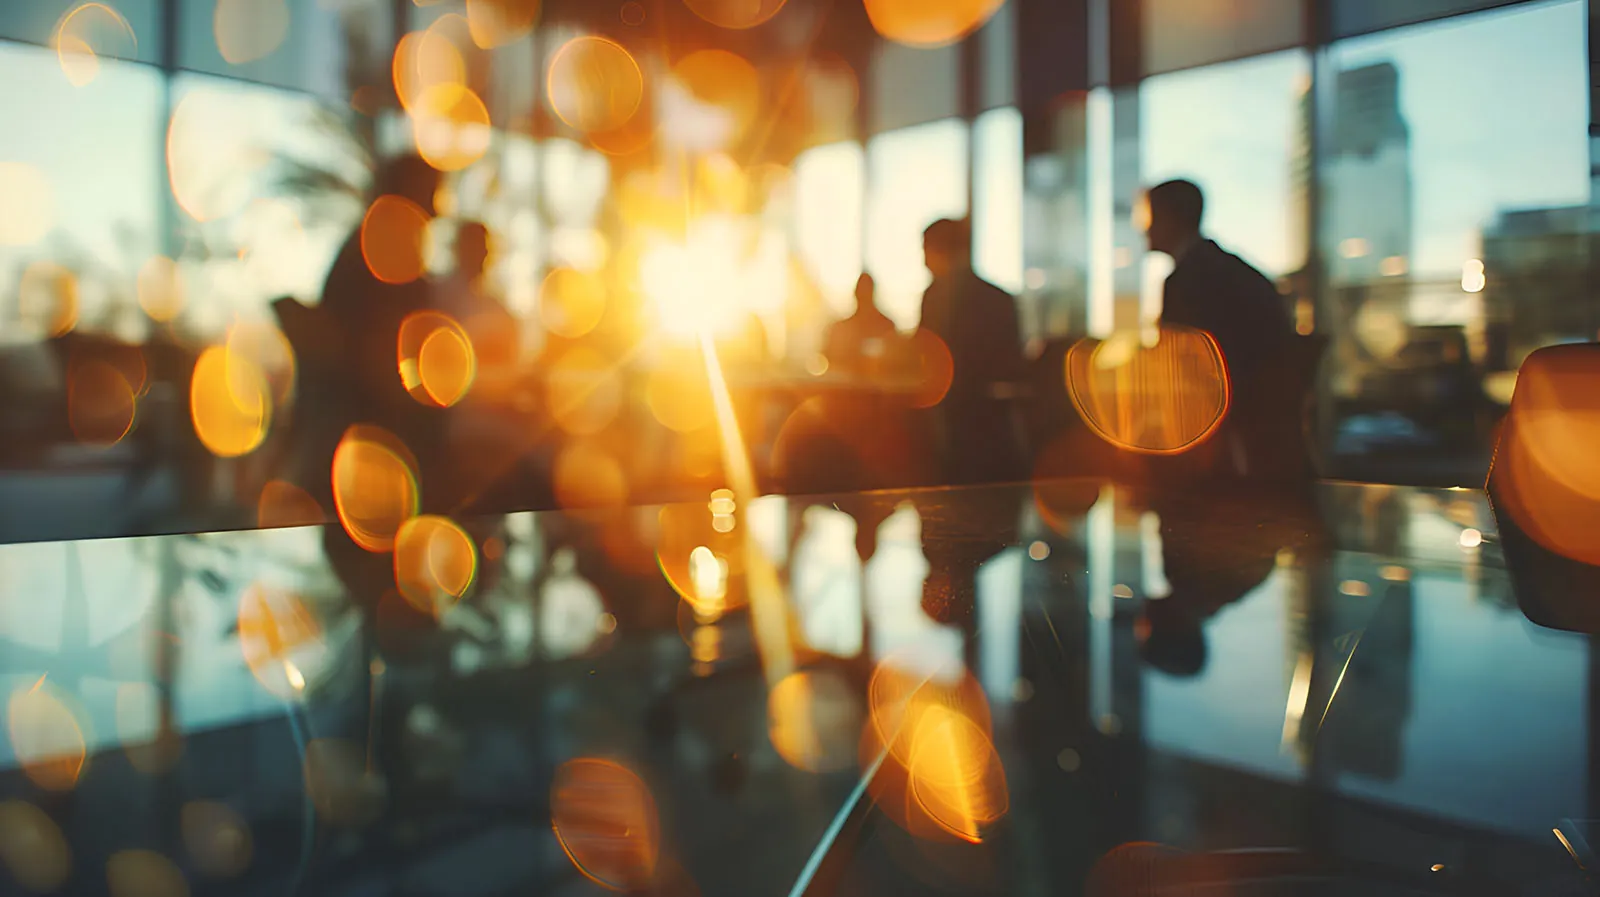 Titelbild der Stellenausschreibung für die Werkstudentestelle - Zusammensitzende Menschen in einem Konferenzraum, in den die Abendsonne fällt und so einen starken Lensflareeffekt erzeugt.